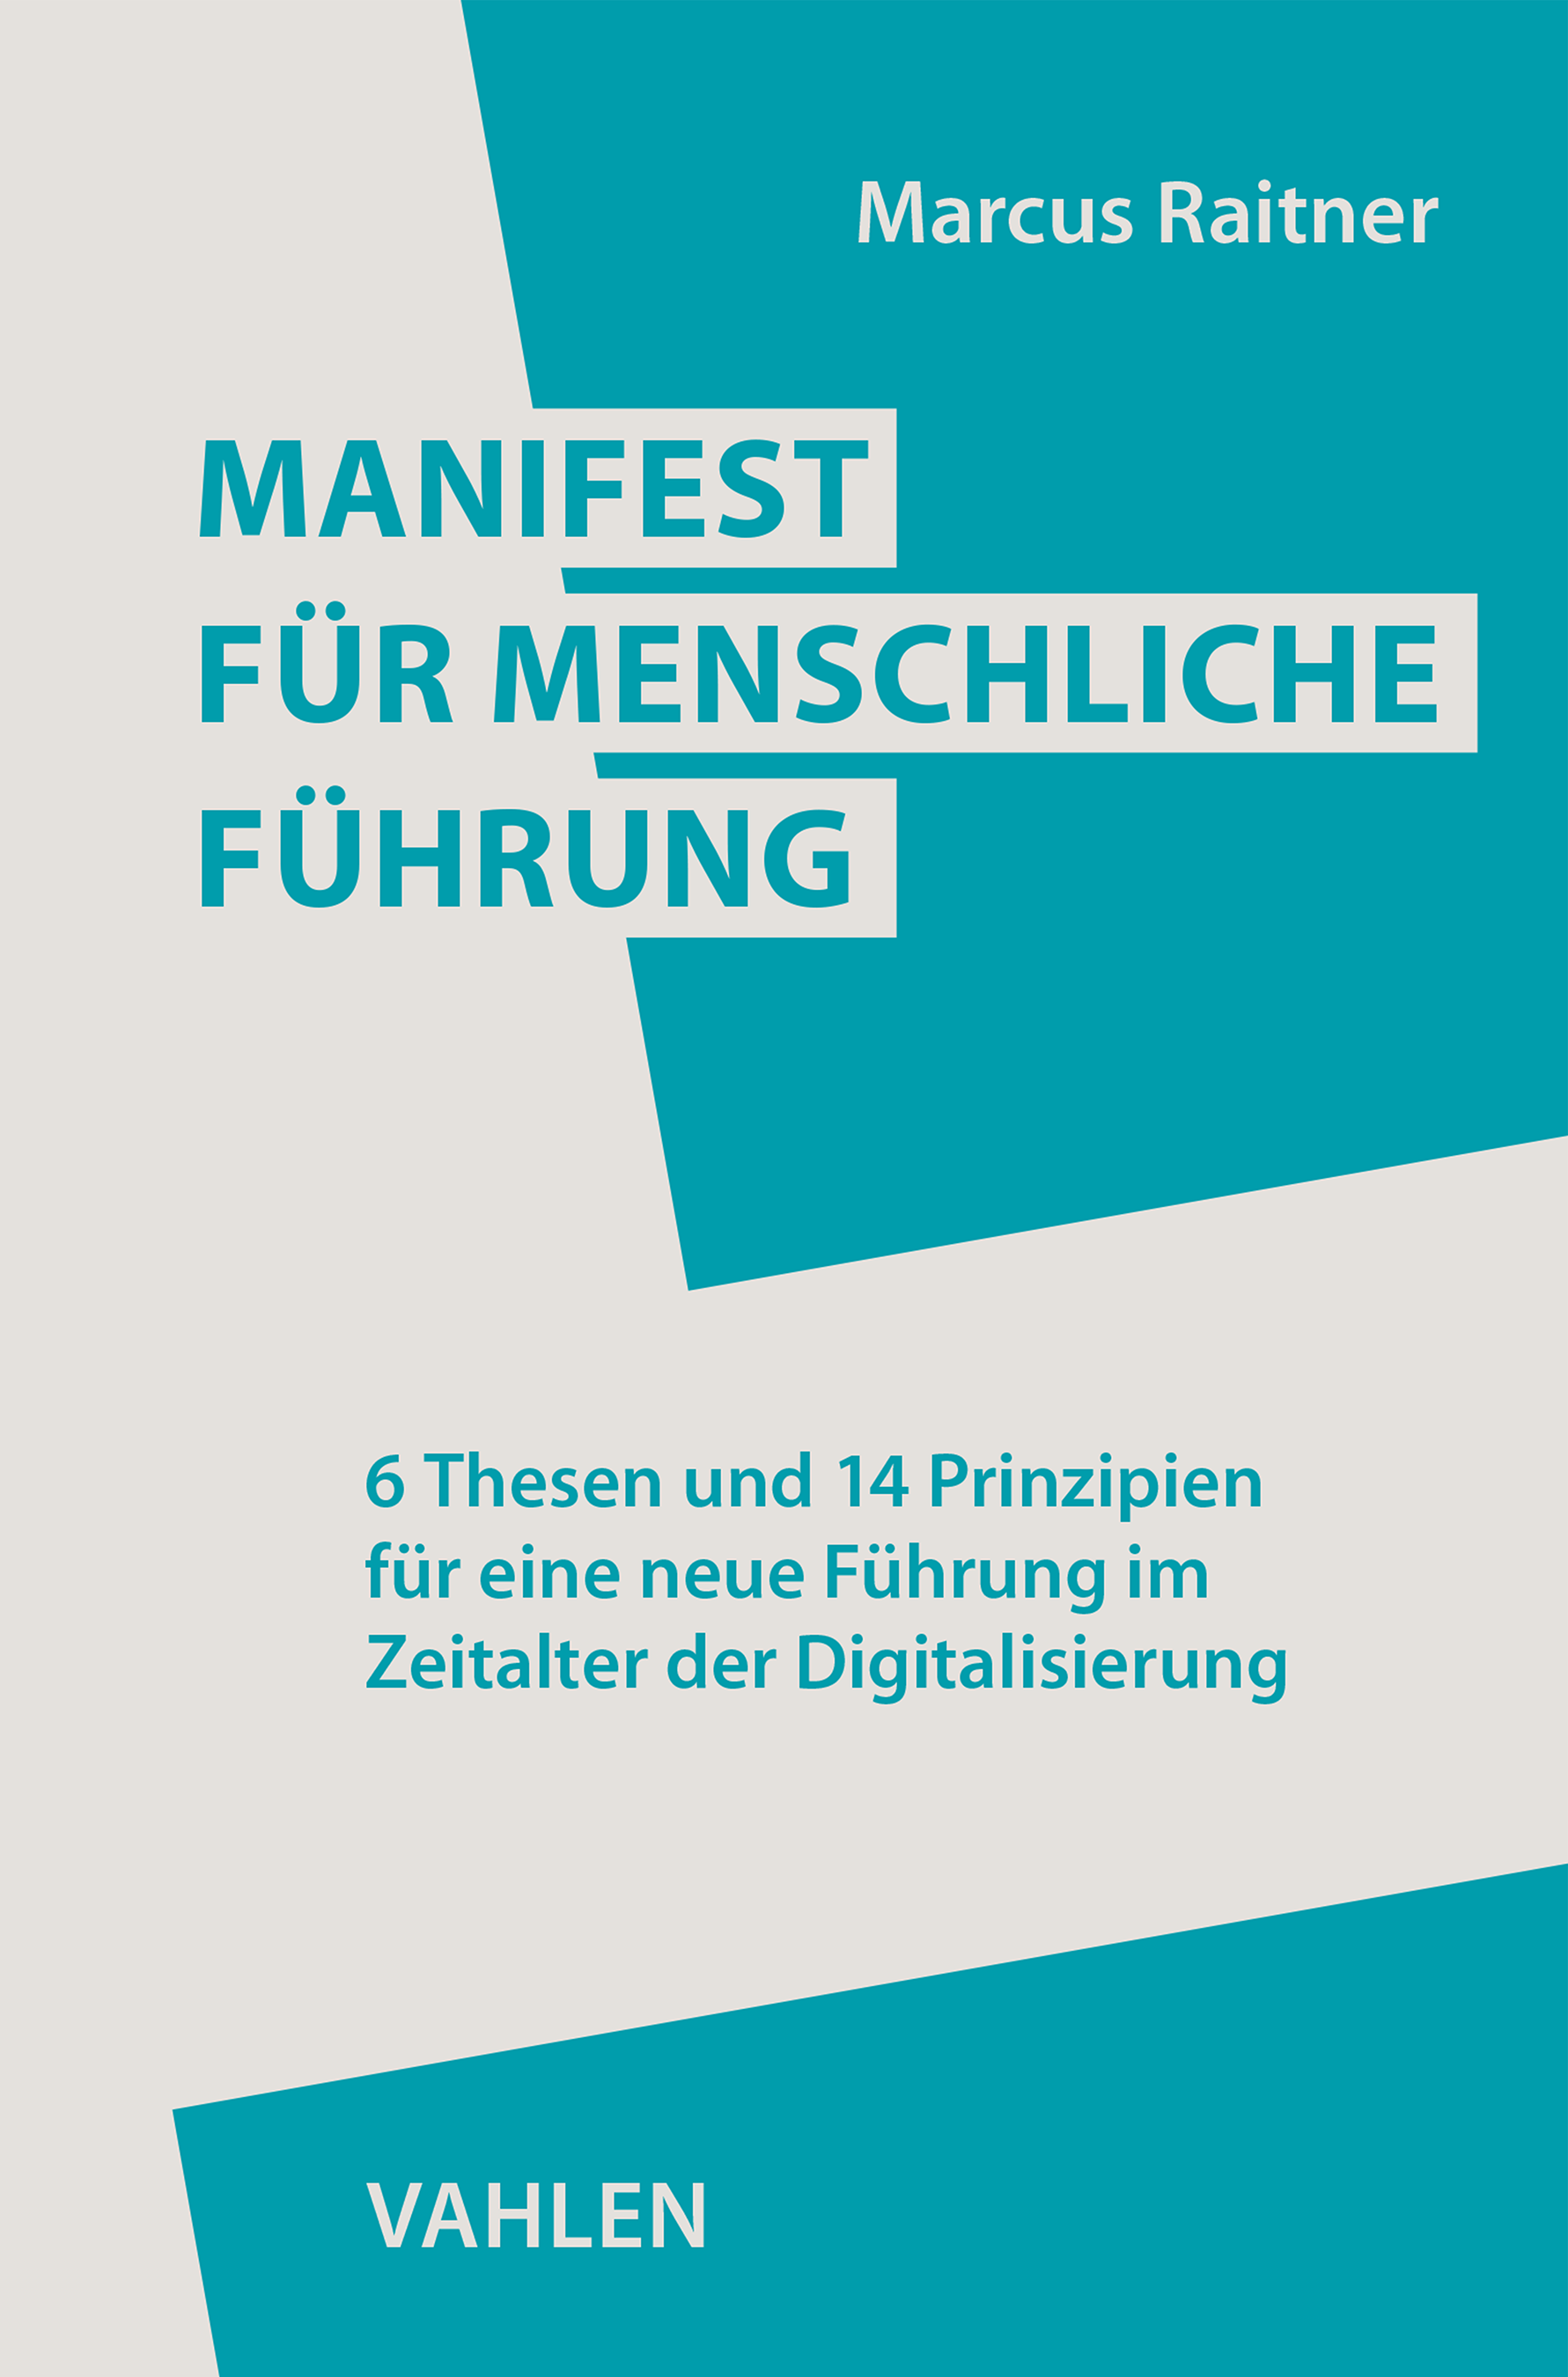 Manifest für menschliche Führung - Markus Raitner - Rezension - Dr. Oliver Mack - xm-institute